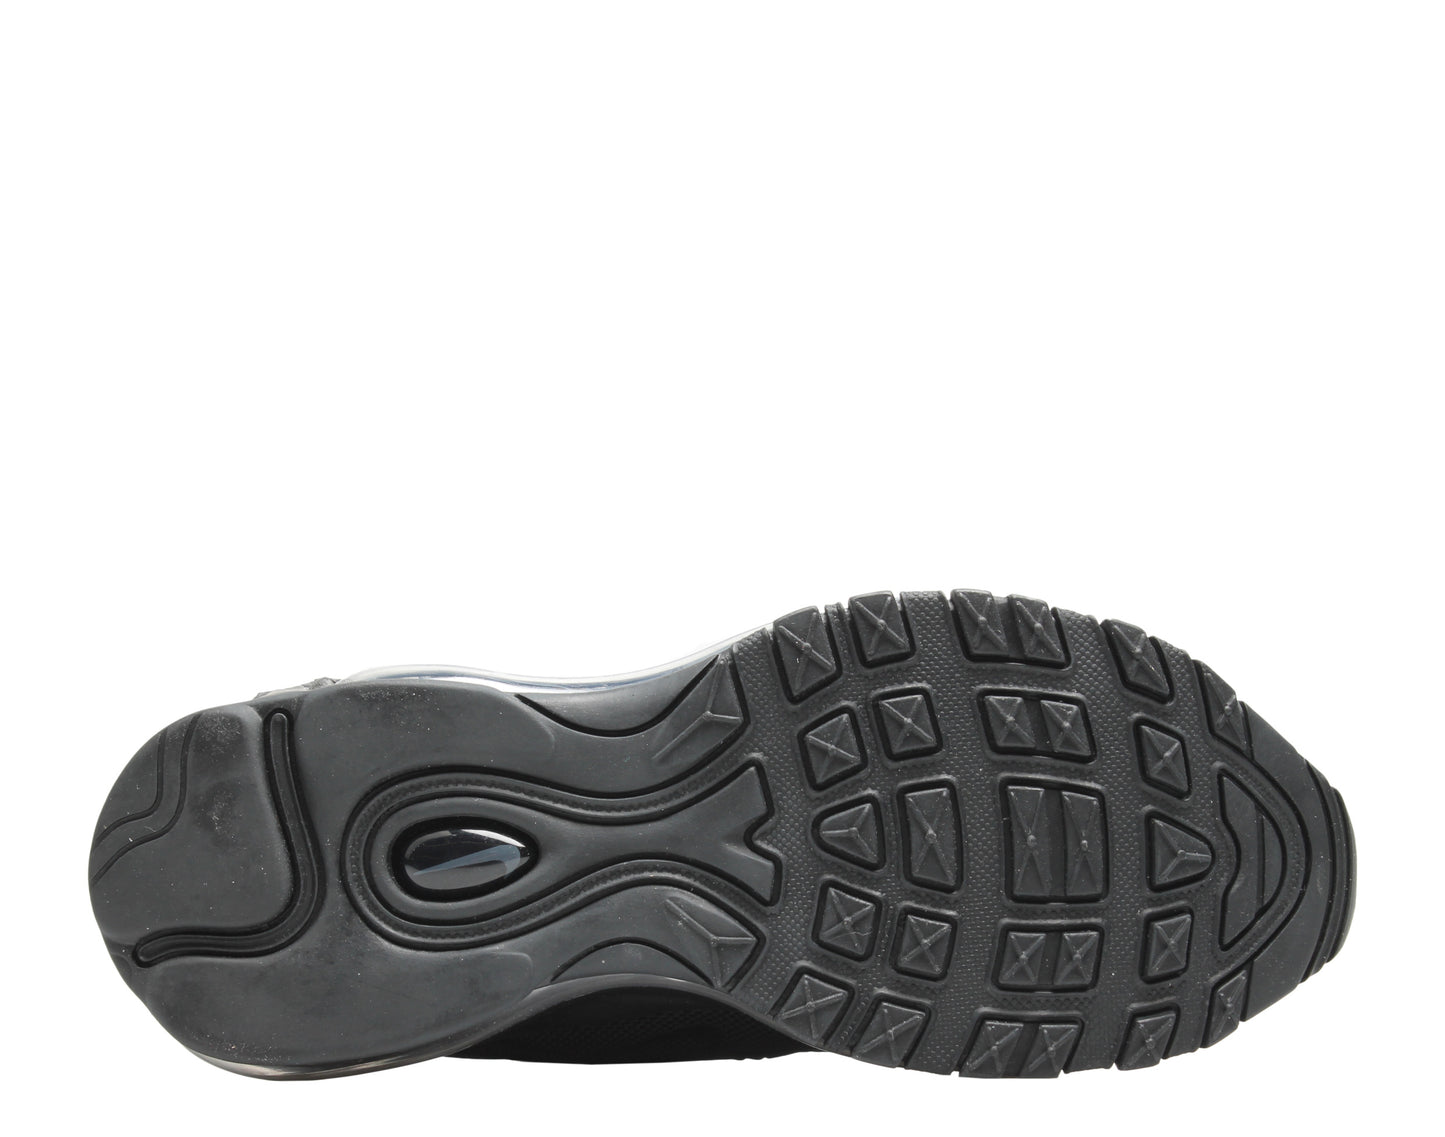 Nike Air Max 97 OG BG Triple Black Big Kids Running Shoes AV4149-001